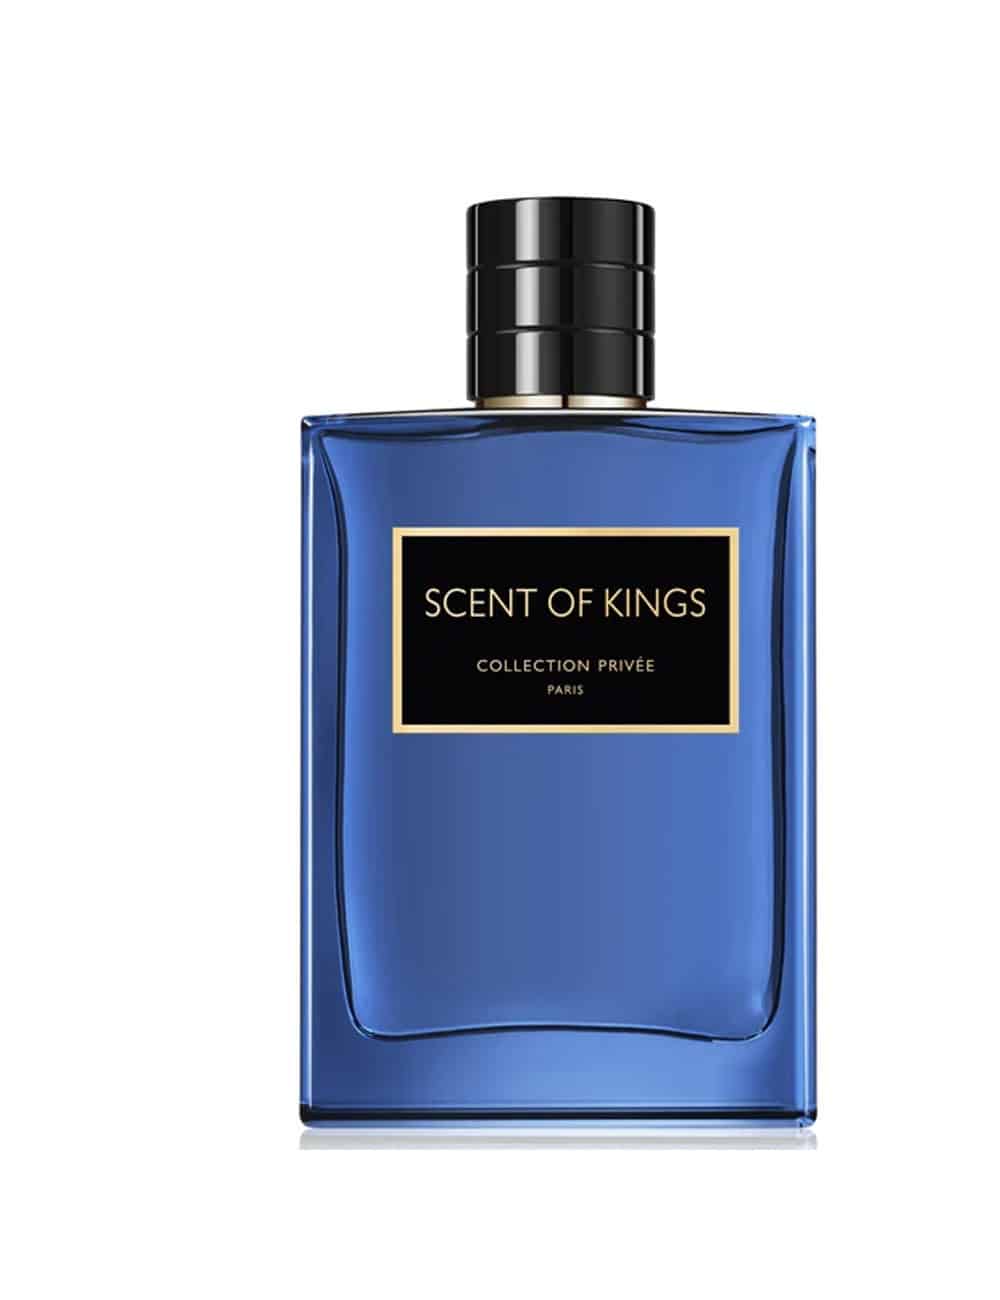 בושם לגבר גפרליס סקנט אוף קינג 100 מ״ל אדפ Geparlys Scent Of Kings Eau de Parfum 100 ml